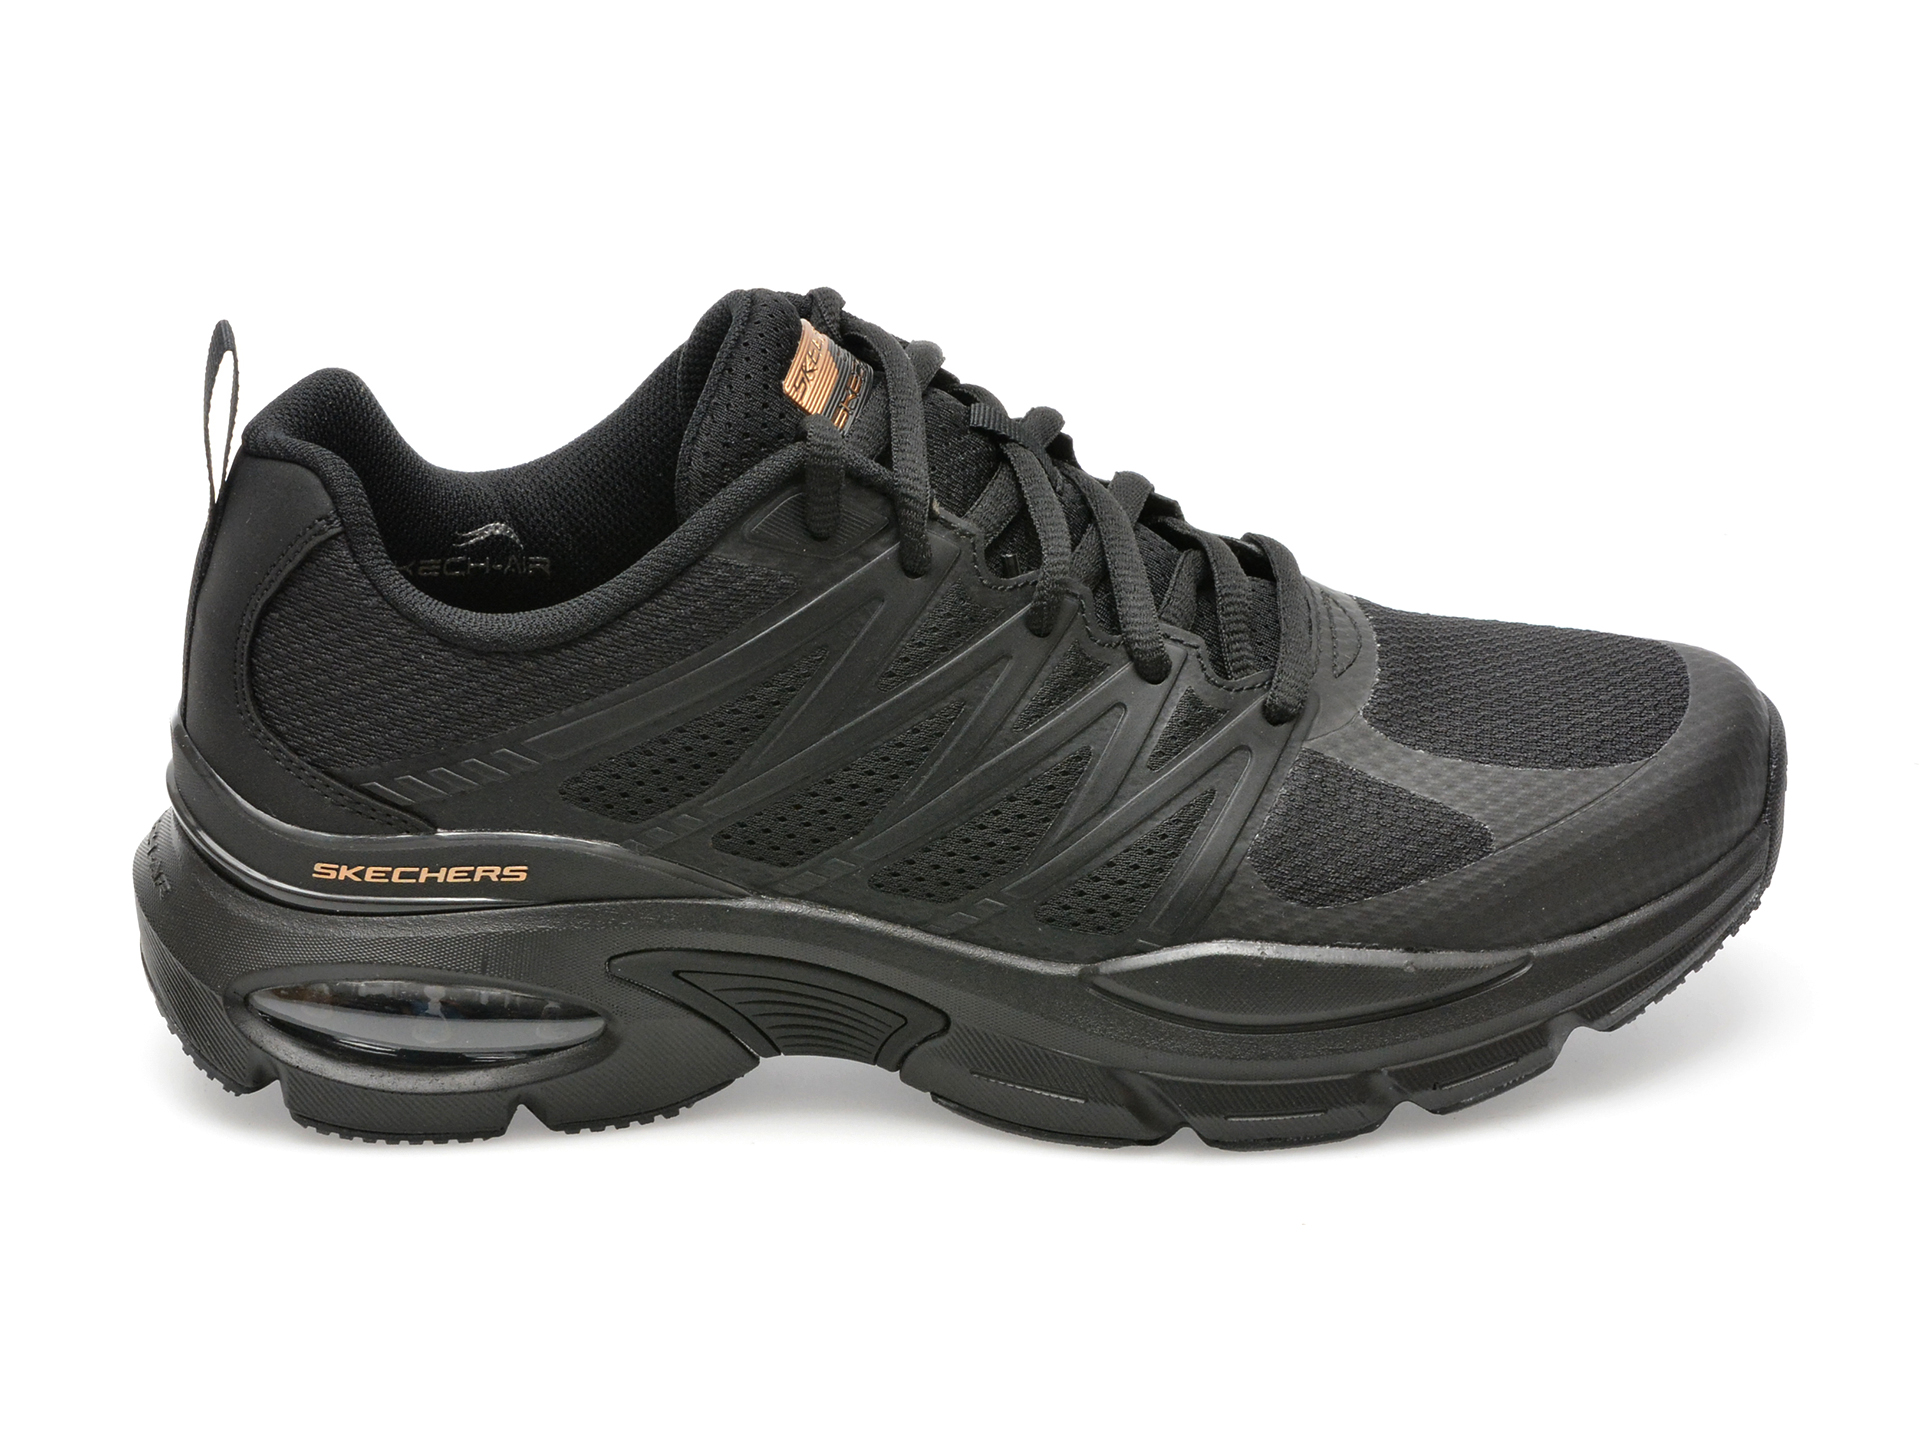 Pantofi sport SKECHERS negri, SKECH-AIR VENTURA, din material textil